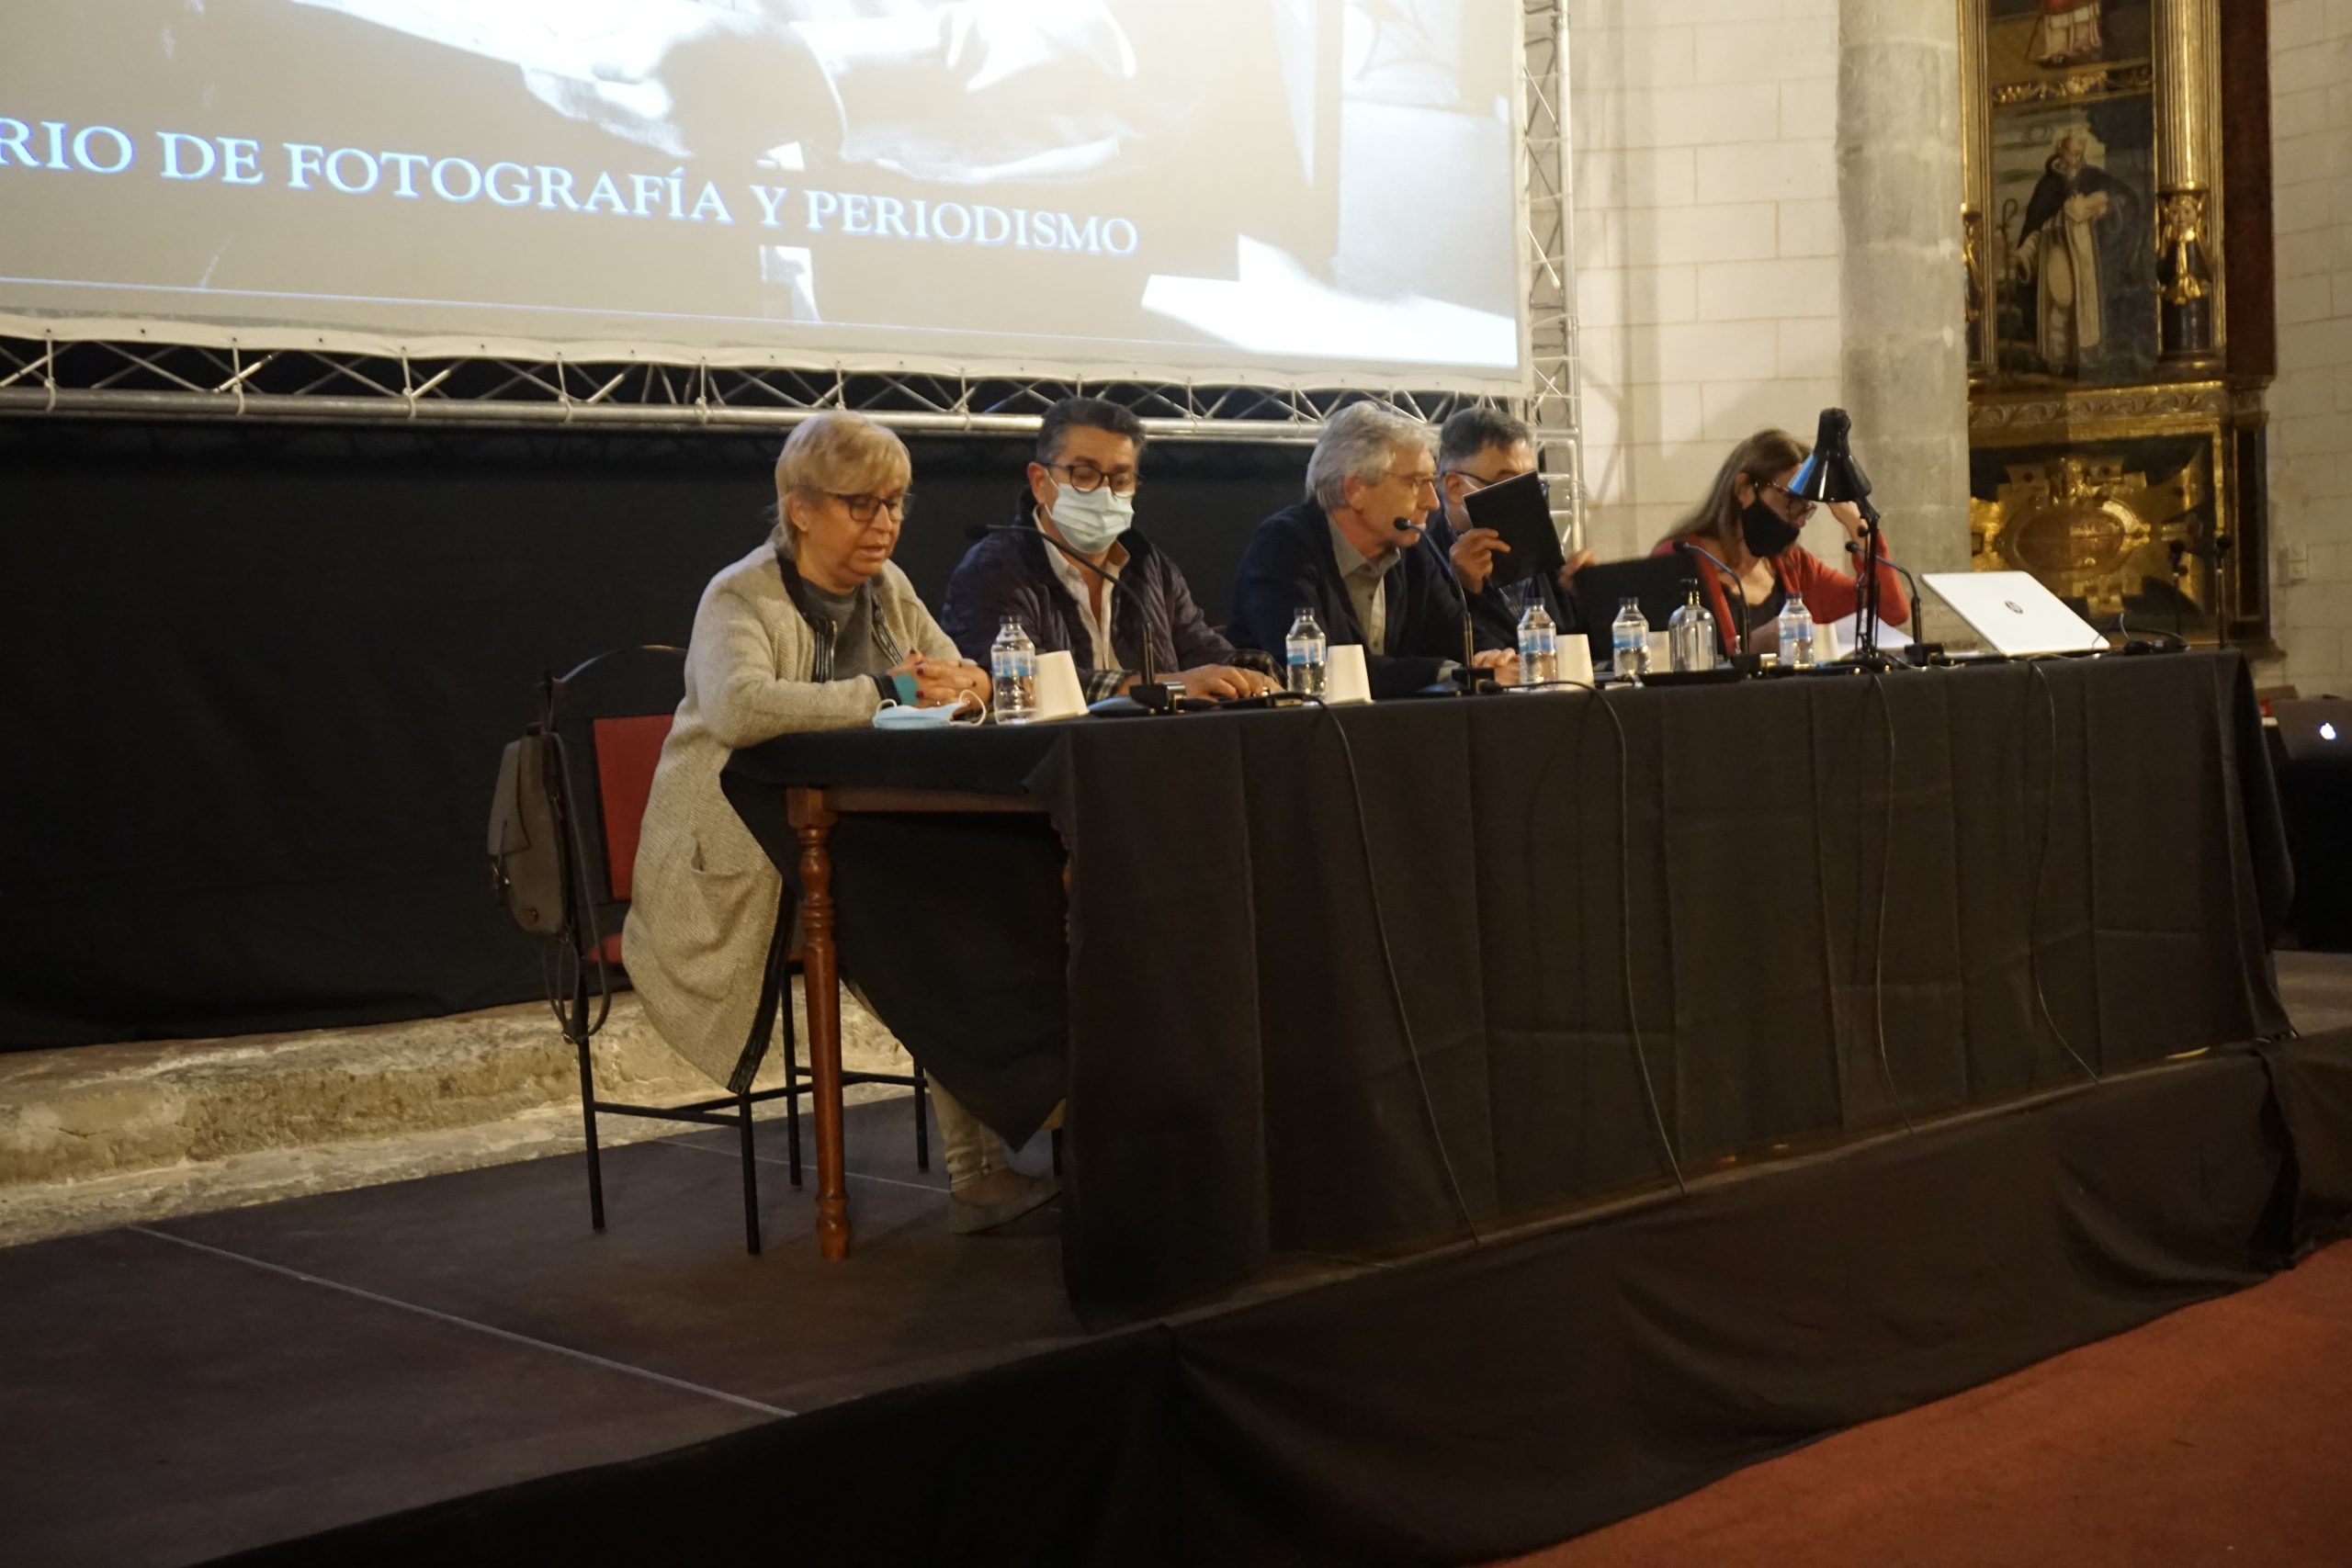 El Seminario de Fotografía y Periodismo regresa a Albarracín el patrocinio de la DPT - Provincial de Teruel